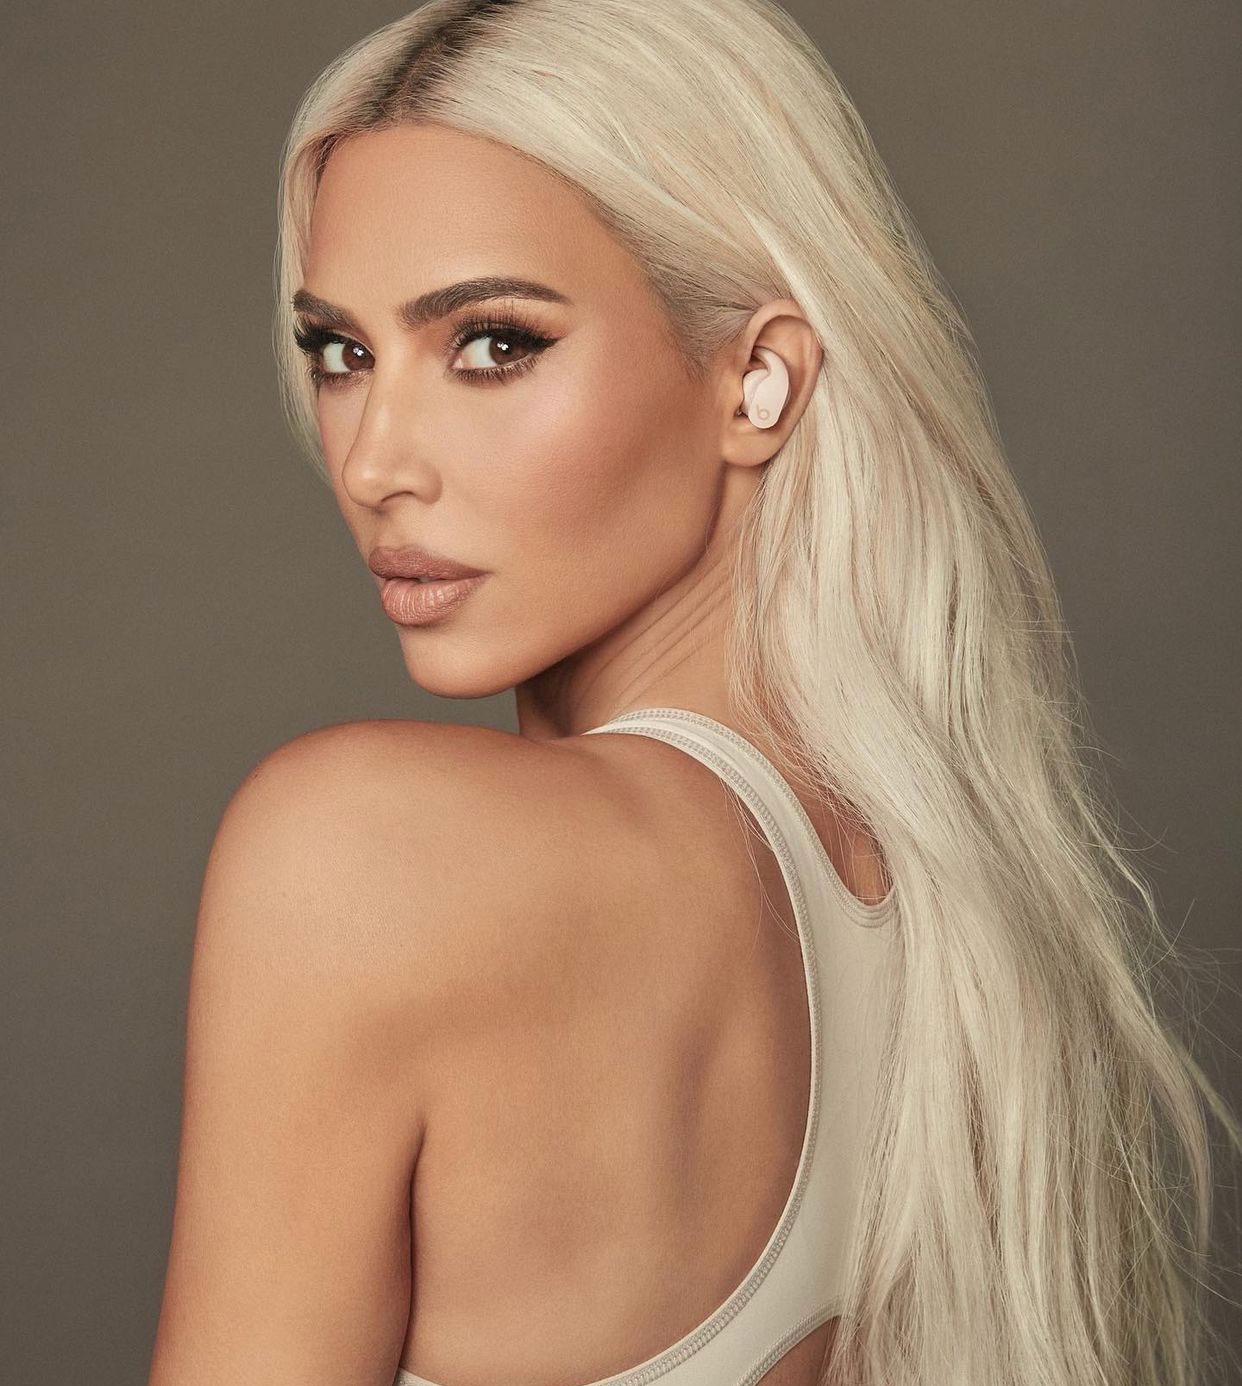 Kim Kardashian cũng liên tục xuất hiện tại các sự kiện nổi tiếng lẫn ảnh chụp đời thường với mái tóc tẩy trắng để lộ chân đen. Tuy nhiên, mái tóc này không hề khiến cô trở nên lôi thôi hay kém sắc mà ngược lại còn giúp người đẹp tôn lên vẻ sexy, nóng bỏng hơn.